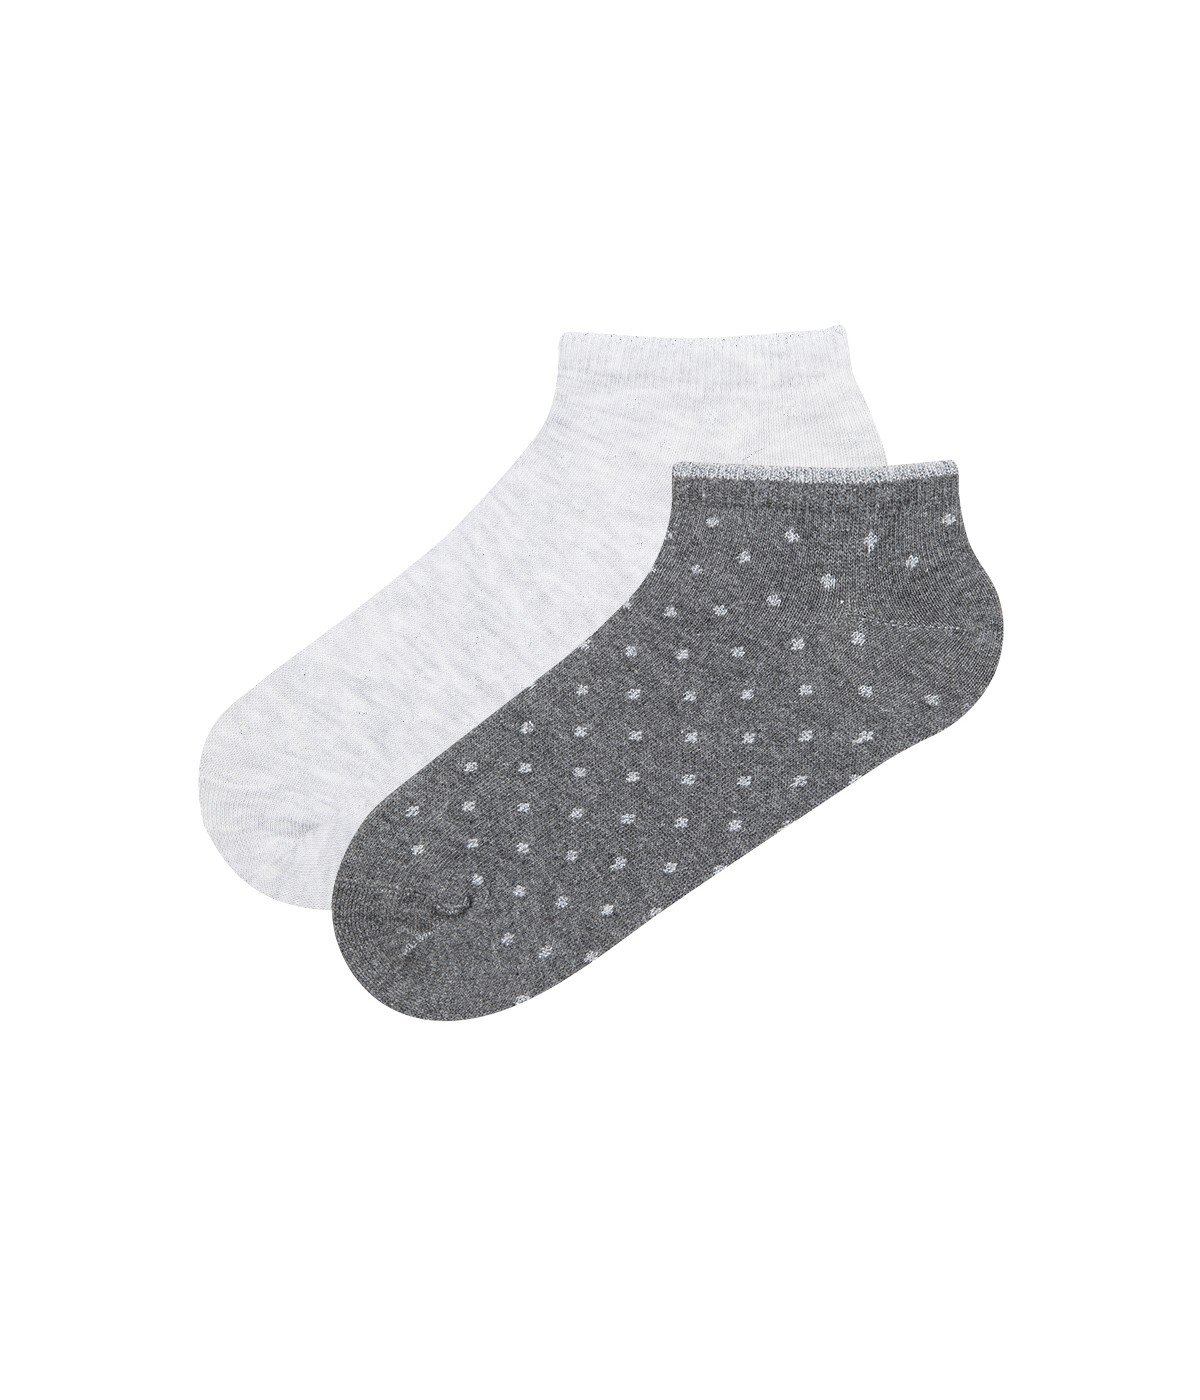 Shiny Dots 2 in 1 Liner Socks